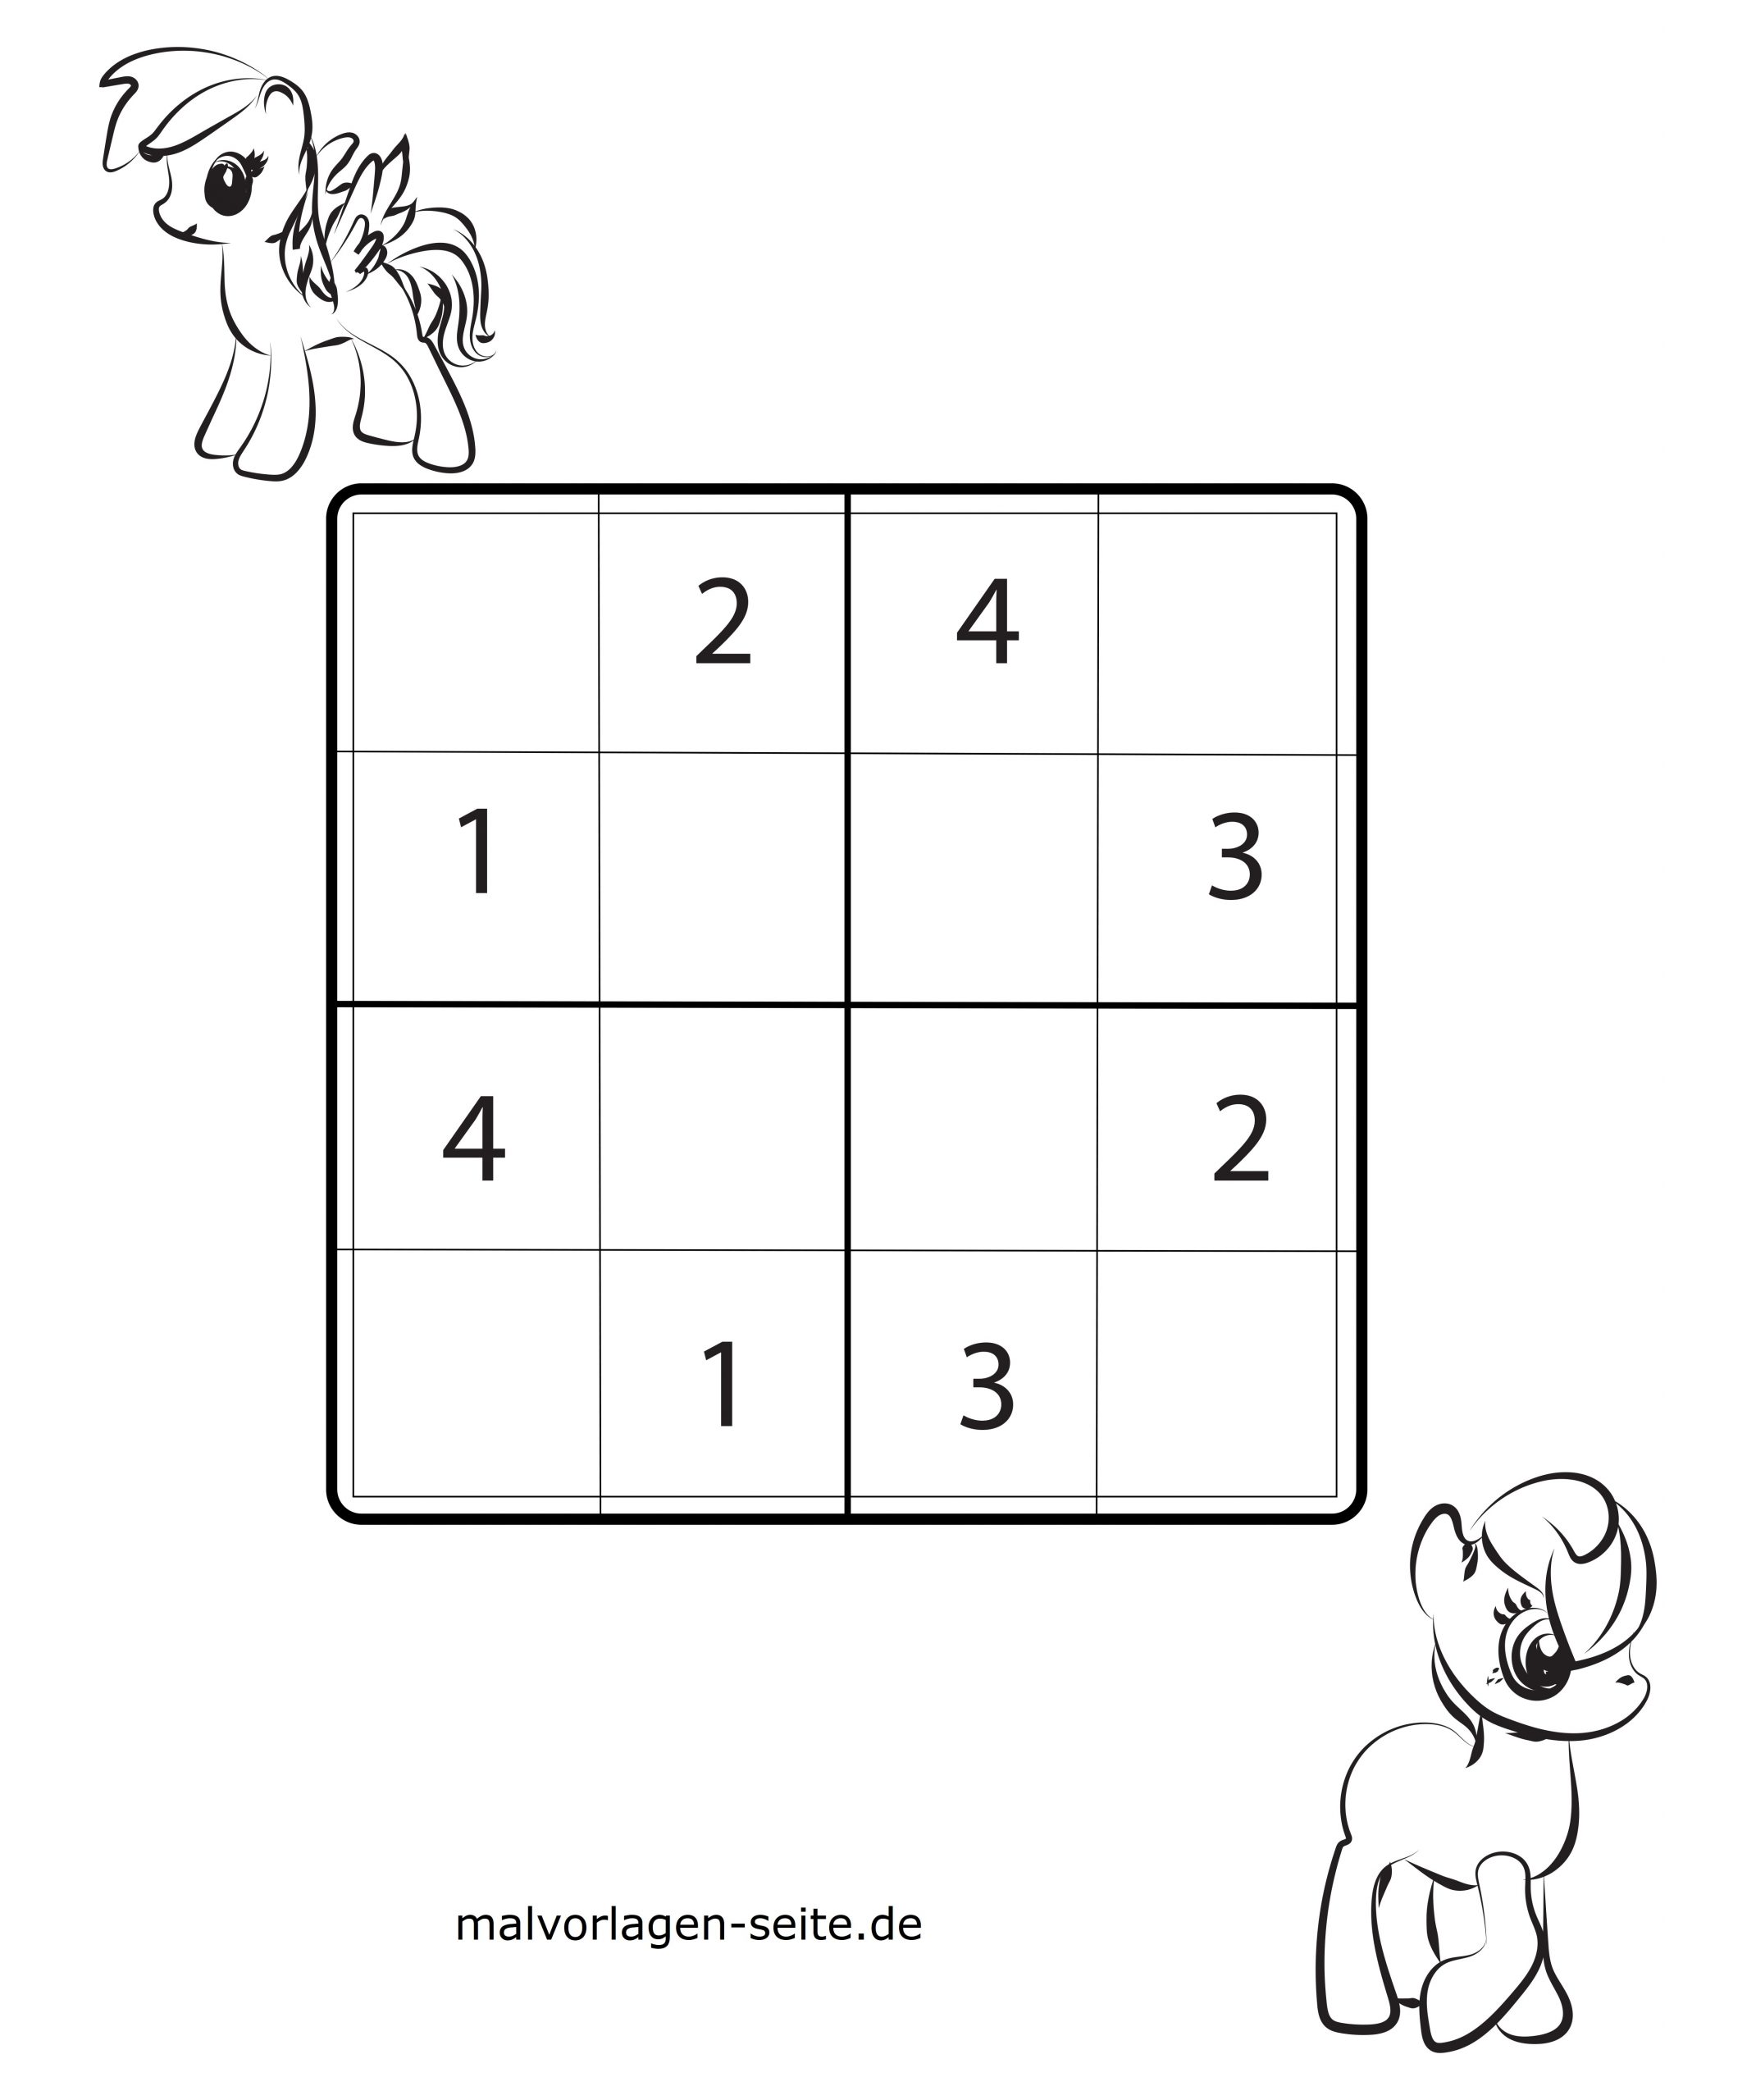 Malvorlagen Sudoku Kinder | Coloring And Malvorlagan bestimmt für Sudoku Einfach Zum Ausdrucken